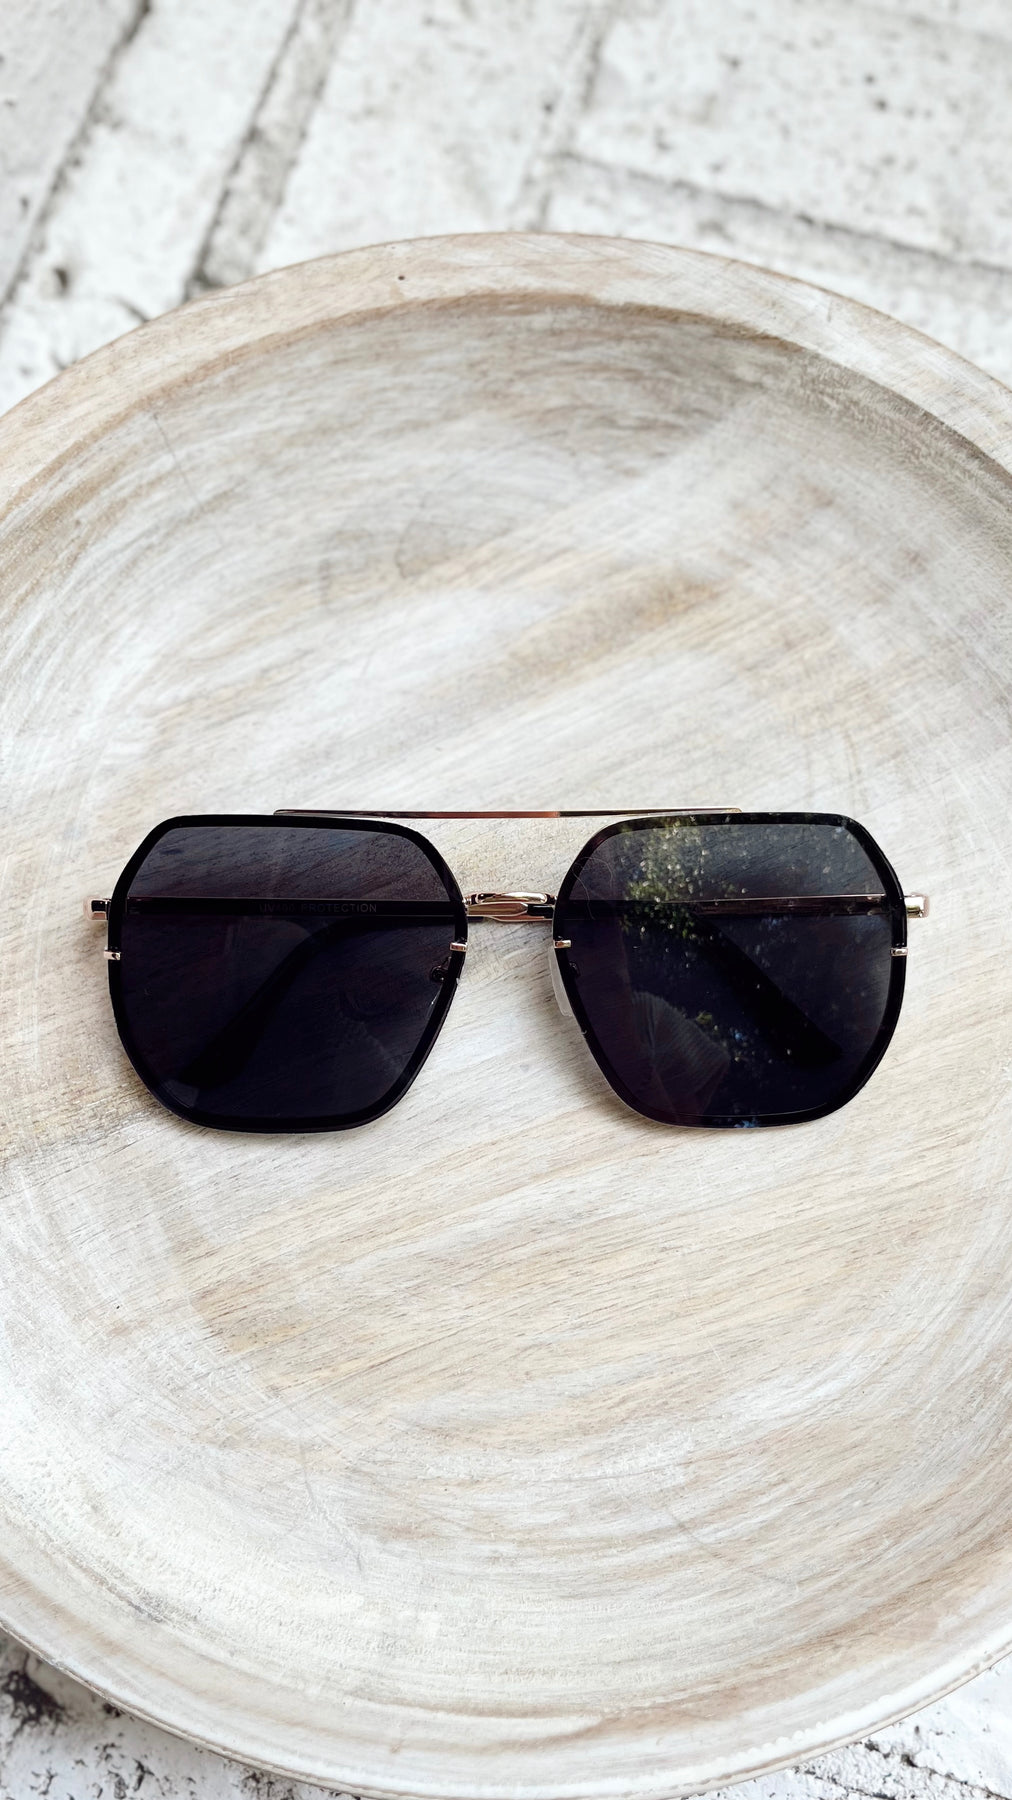 Aviator Square Sunglasses in Brown